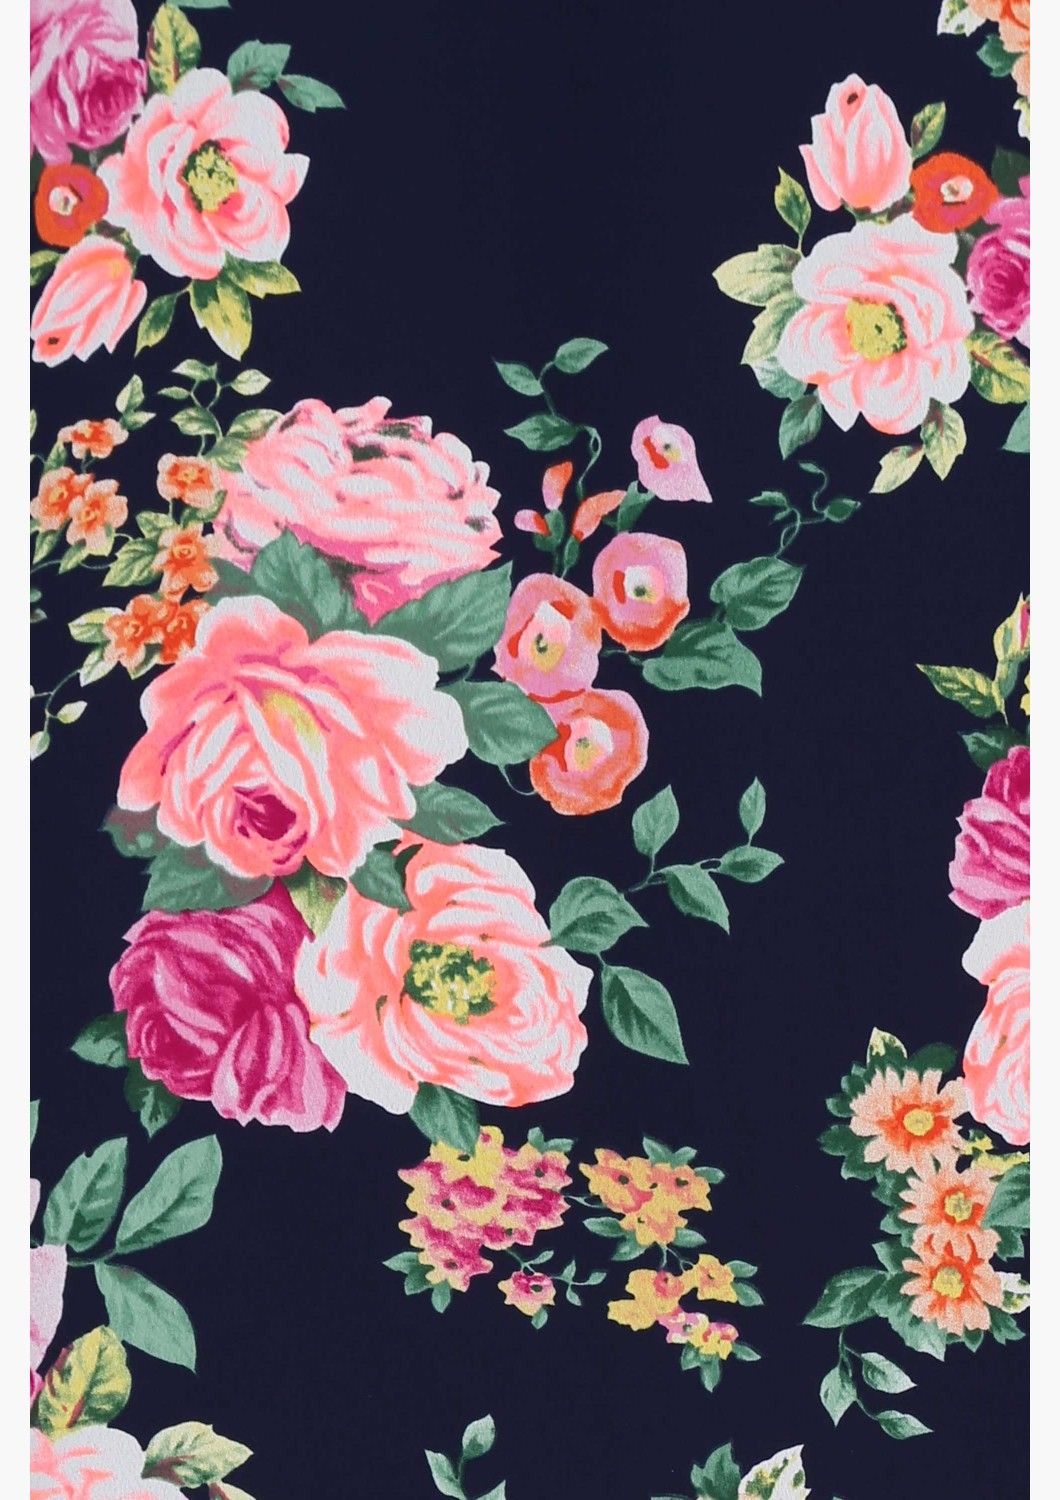 かわいい花の壁紙,ピンク,黒,花,ローズ,パターン